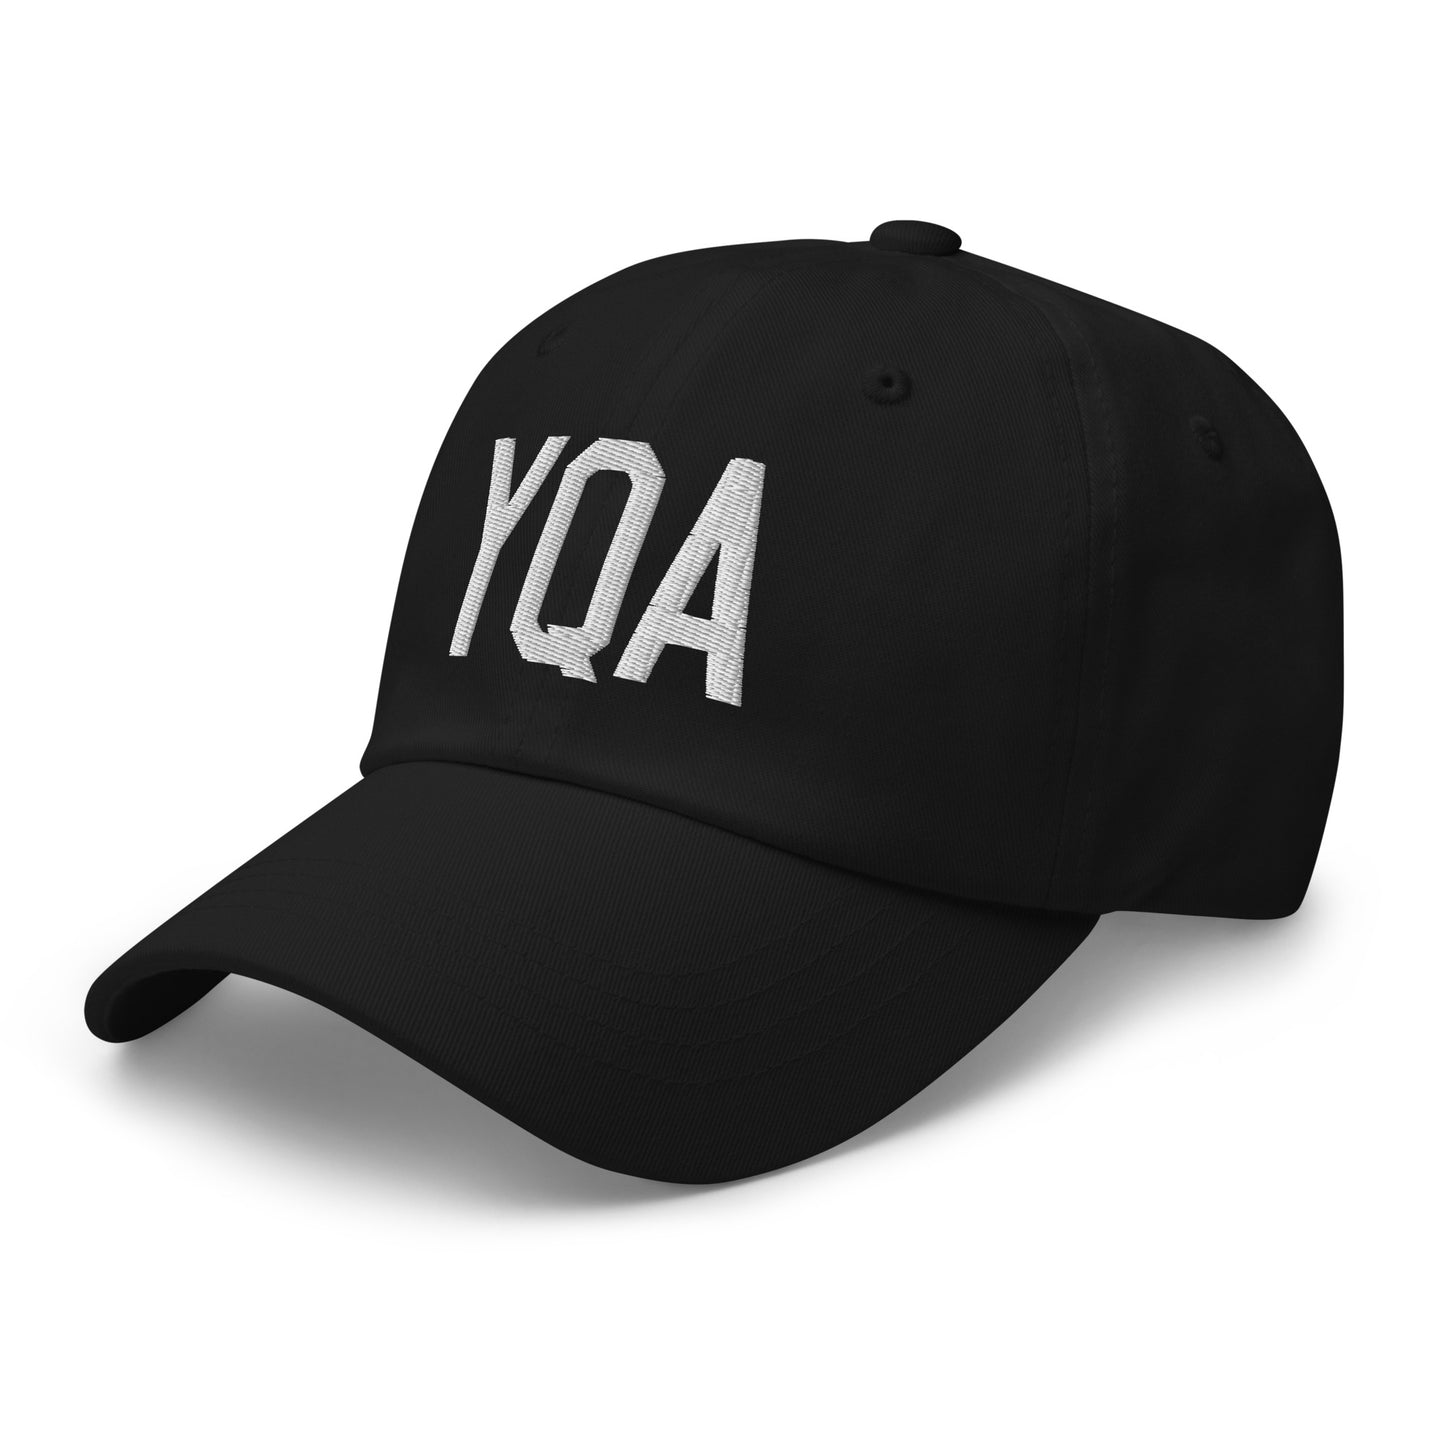 Airport Code Baseball Cap - White • YQA Muskoka • YHM Designs - Image 01